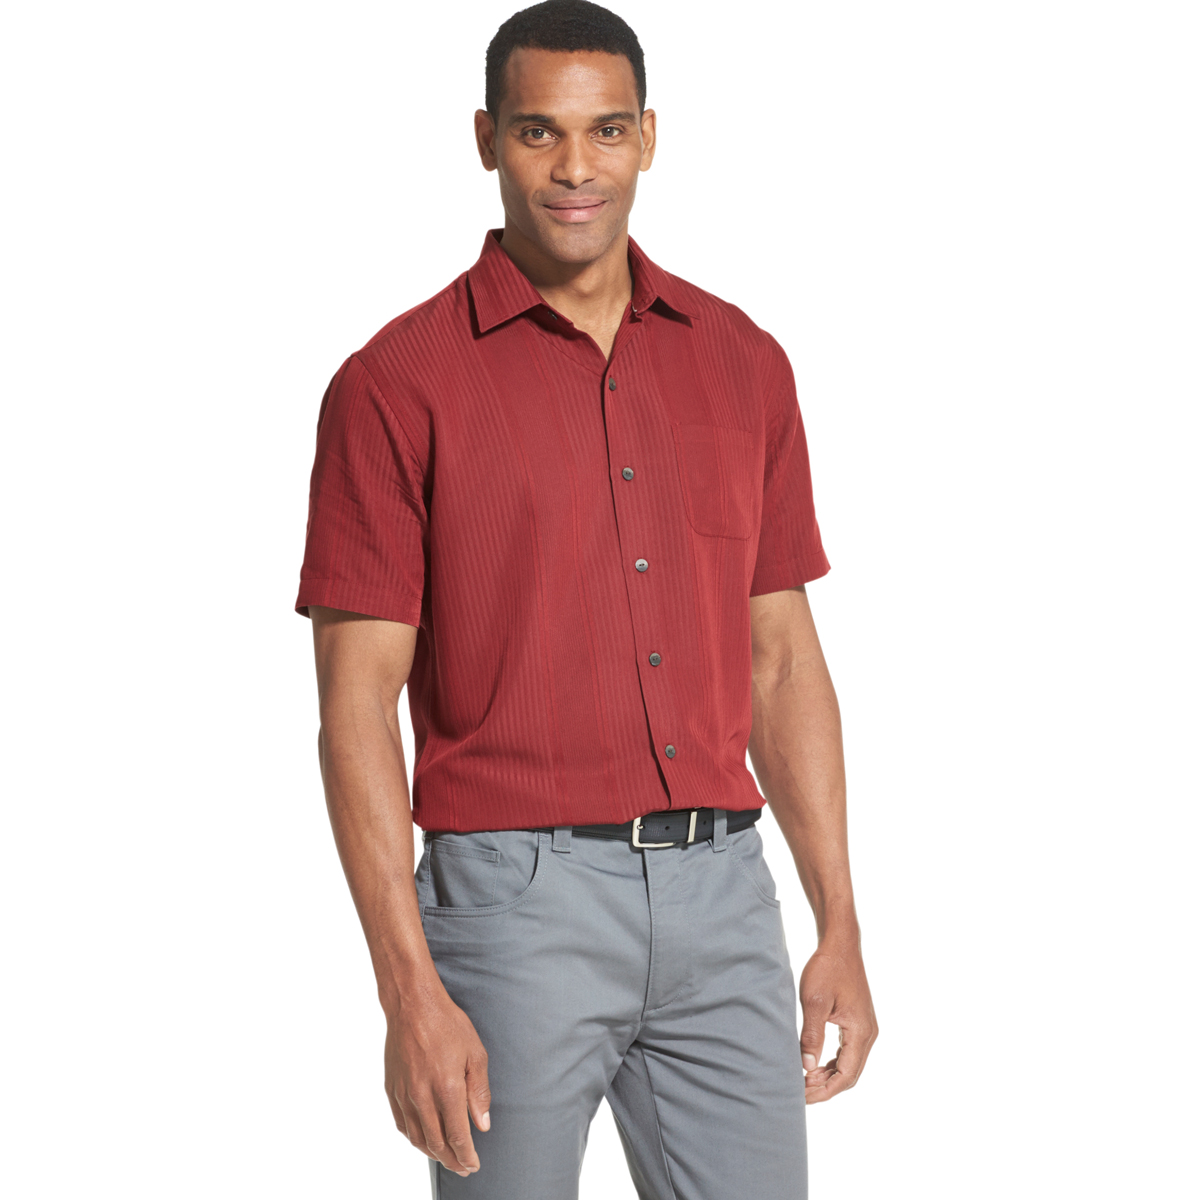 Van Heusen Men's Air Non-Iron Short-Sleeve Shirt - Red, M